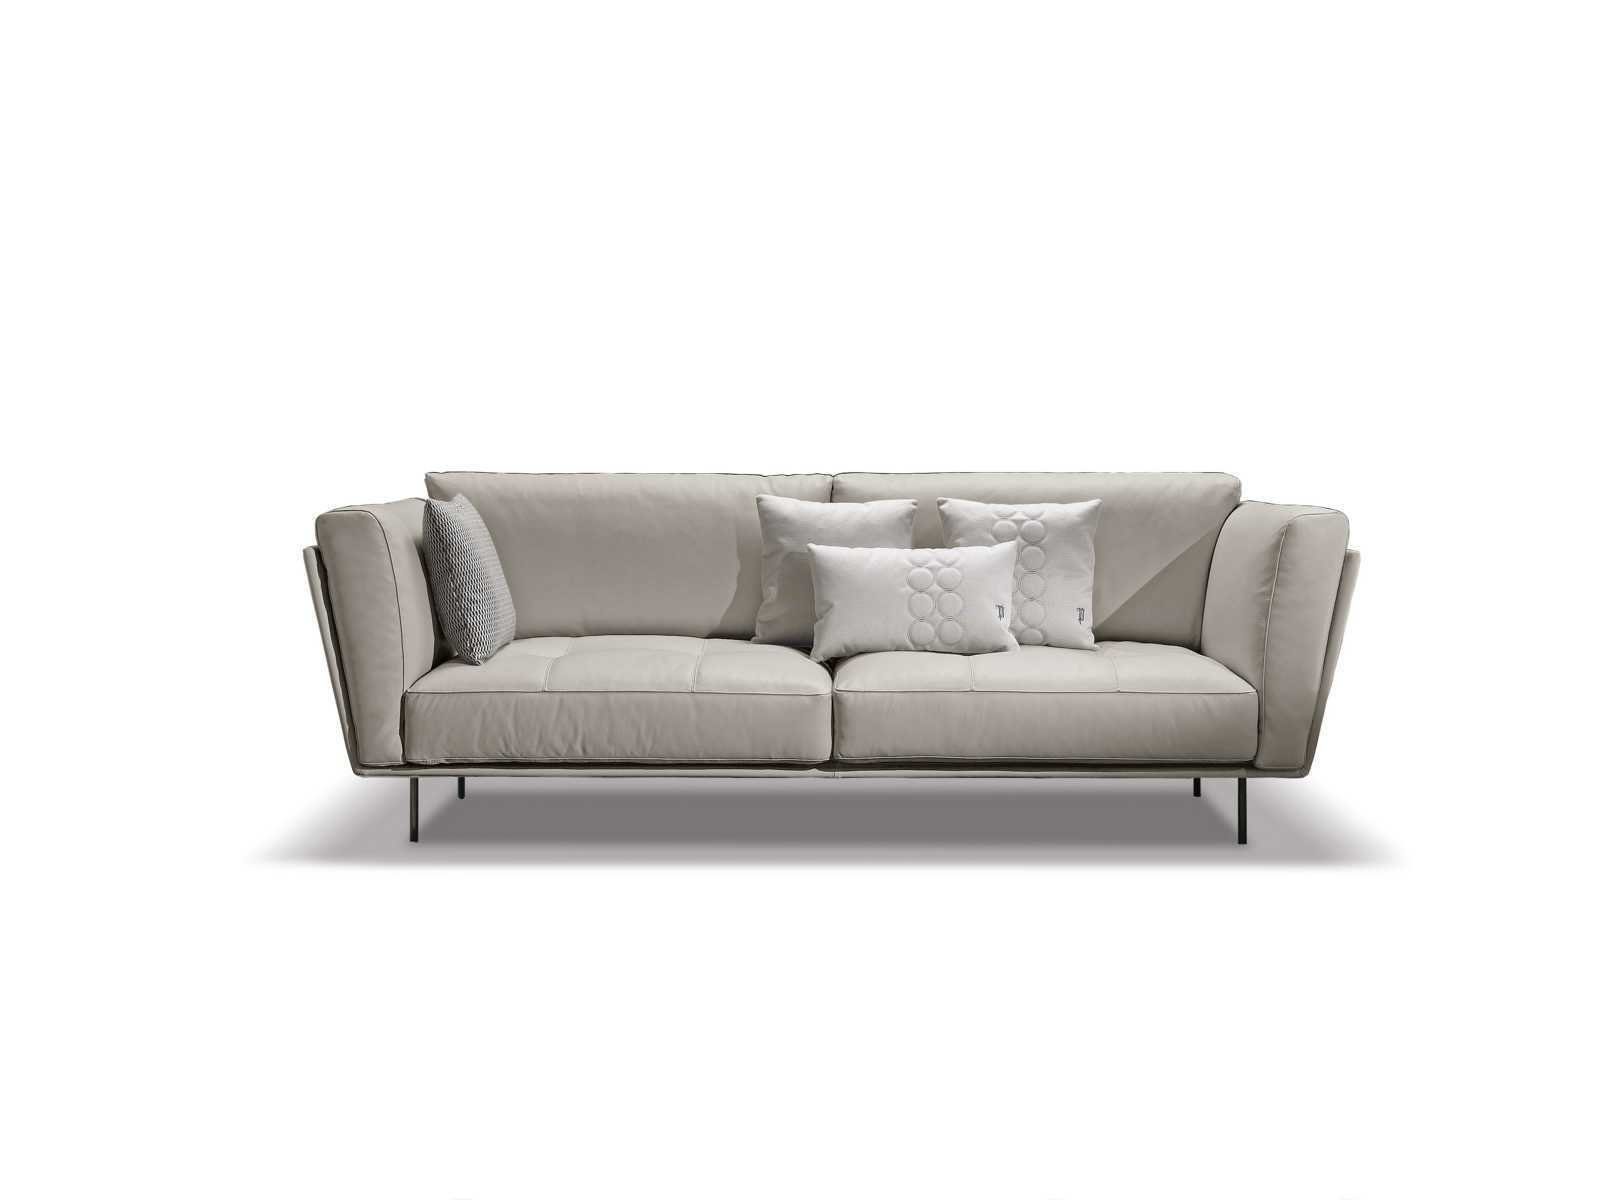 JVmoebel Sofa Luxus Sofa 3 Sitzer Couches Sofas Gepolstert Couch Stoff Modern Beige, Made in Europe Weiß